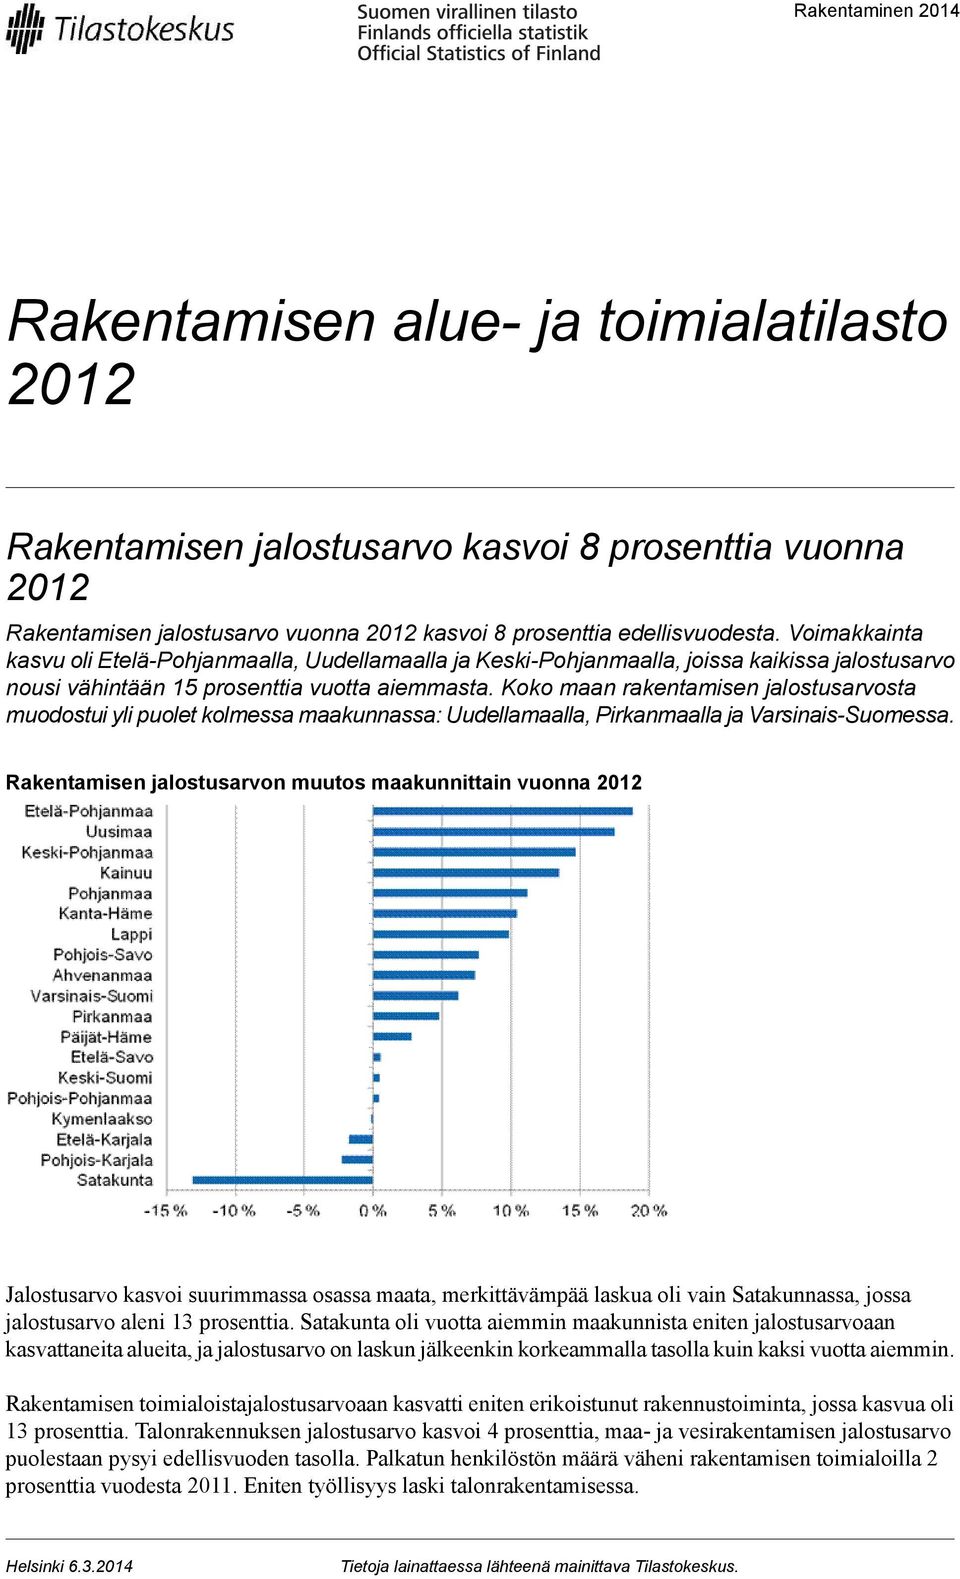 Koko maan rakentamisen jalostusarvosta muodostui yli puolet kolmessa maakunnassa: Uudellamaalla, Pirkanmaalla ja Varsinais-Suomessa.